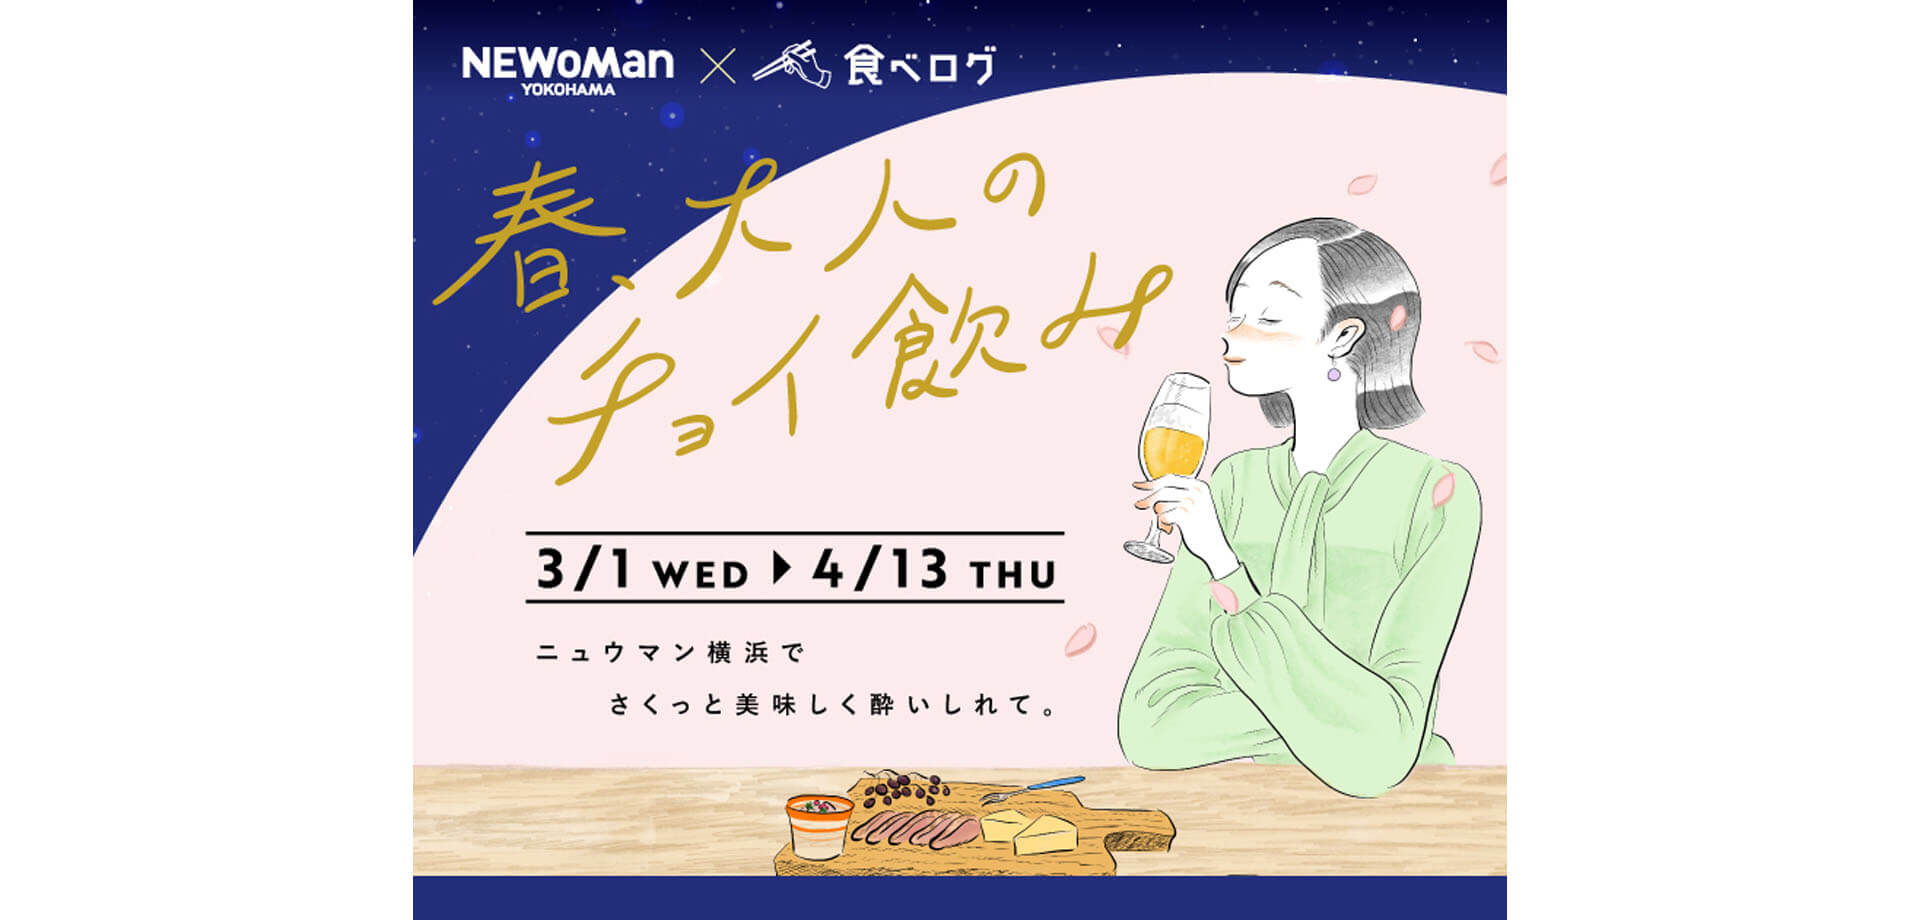 ニュウマン横浜 「春、大人のチョイ飲み」キャンペーン